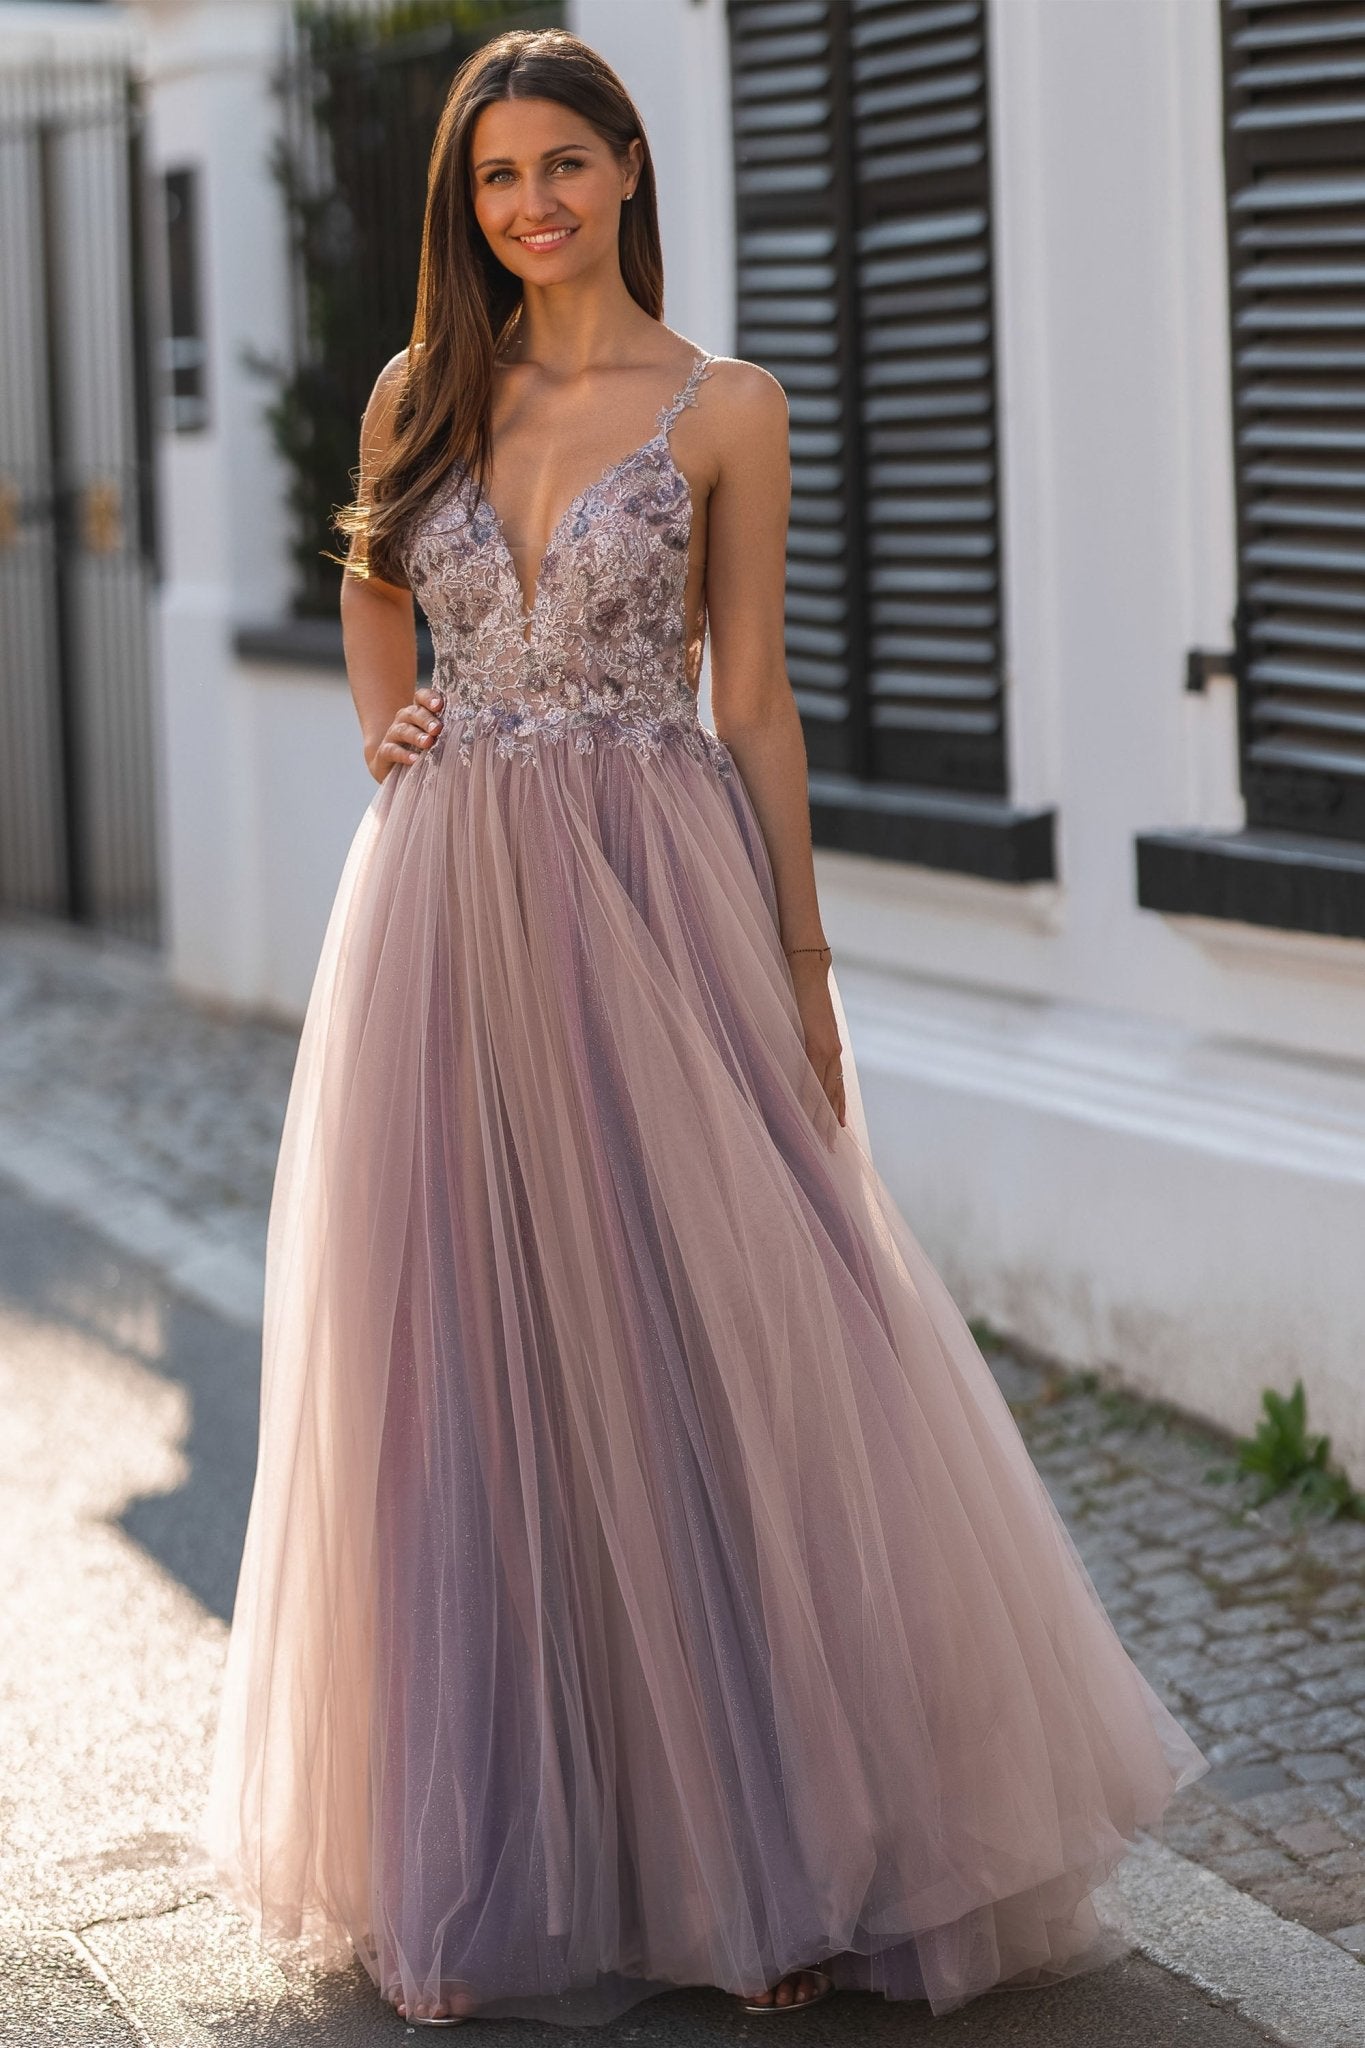 Gold Lace Royal Blue Velvet Sleeved Slit Prom Gown - Xdressy